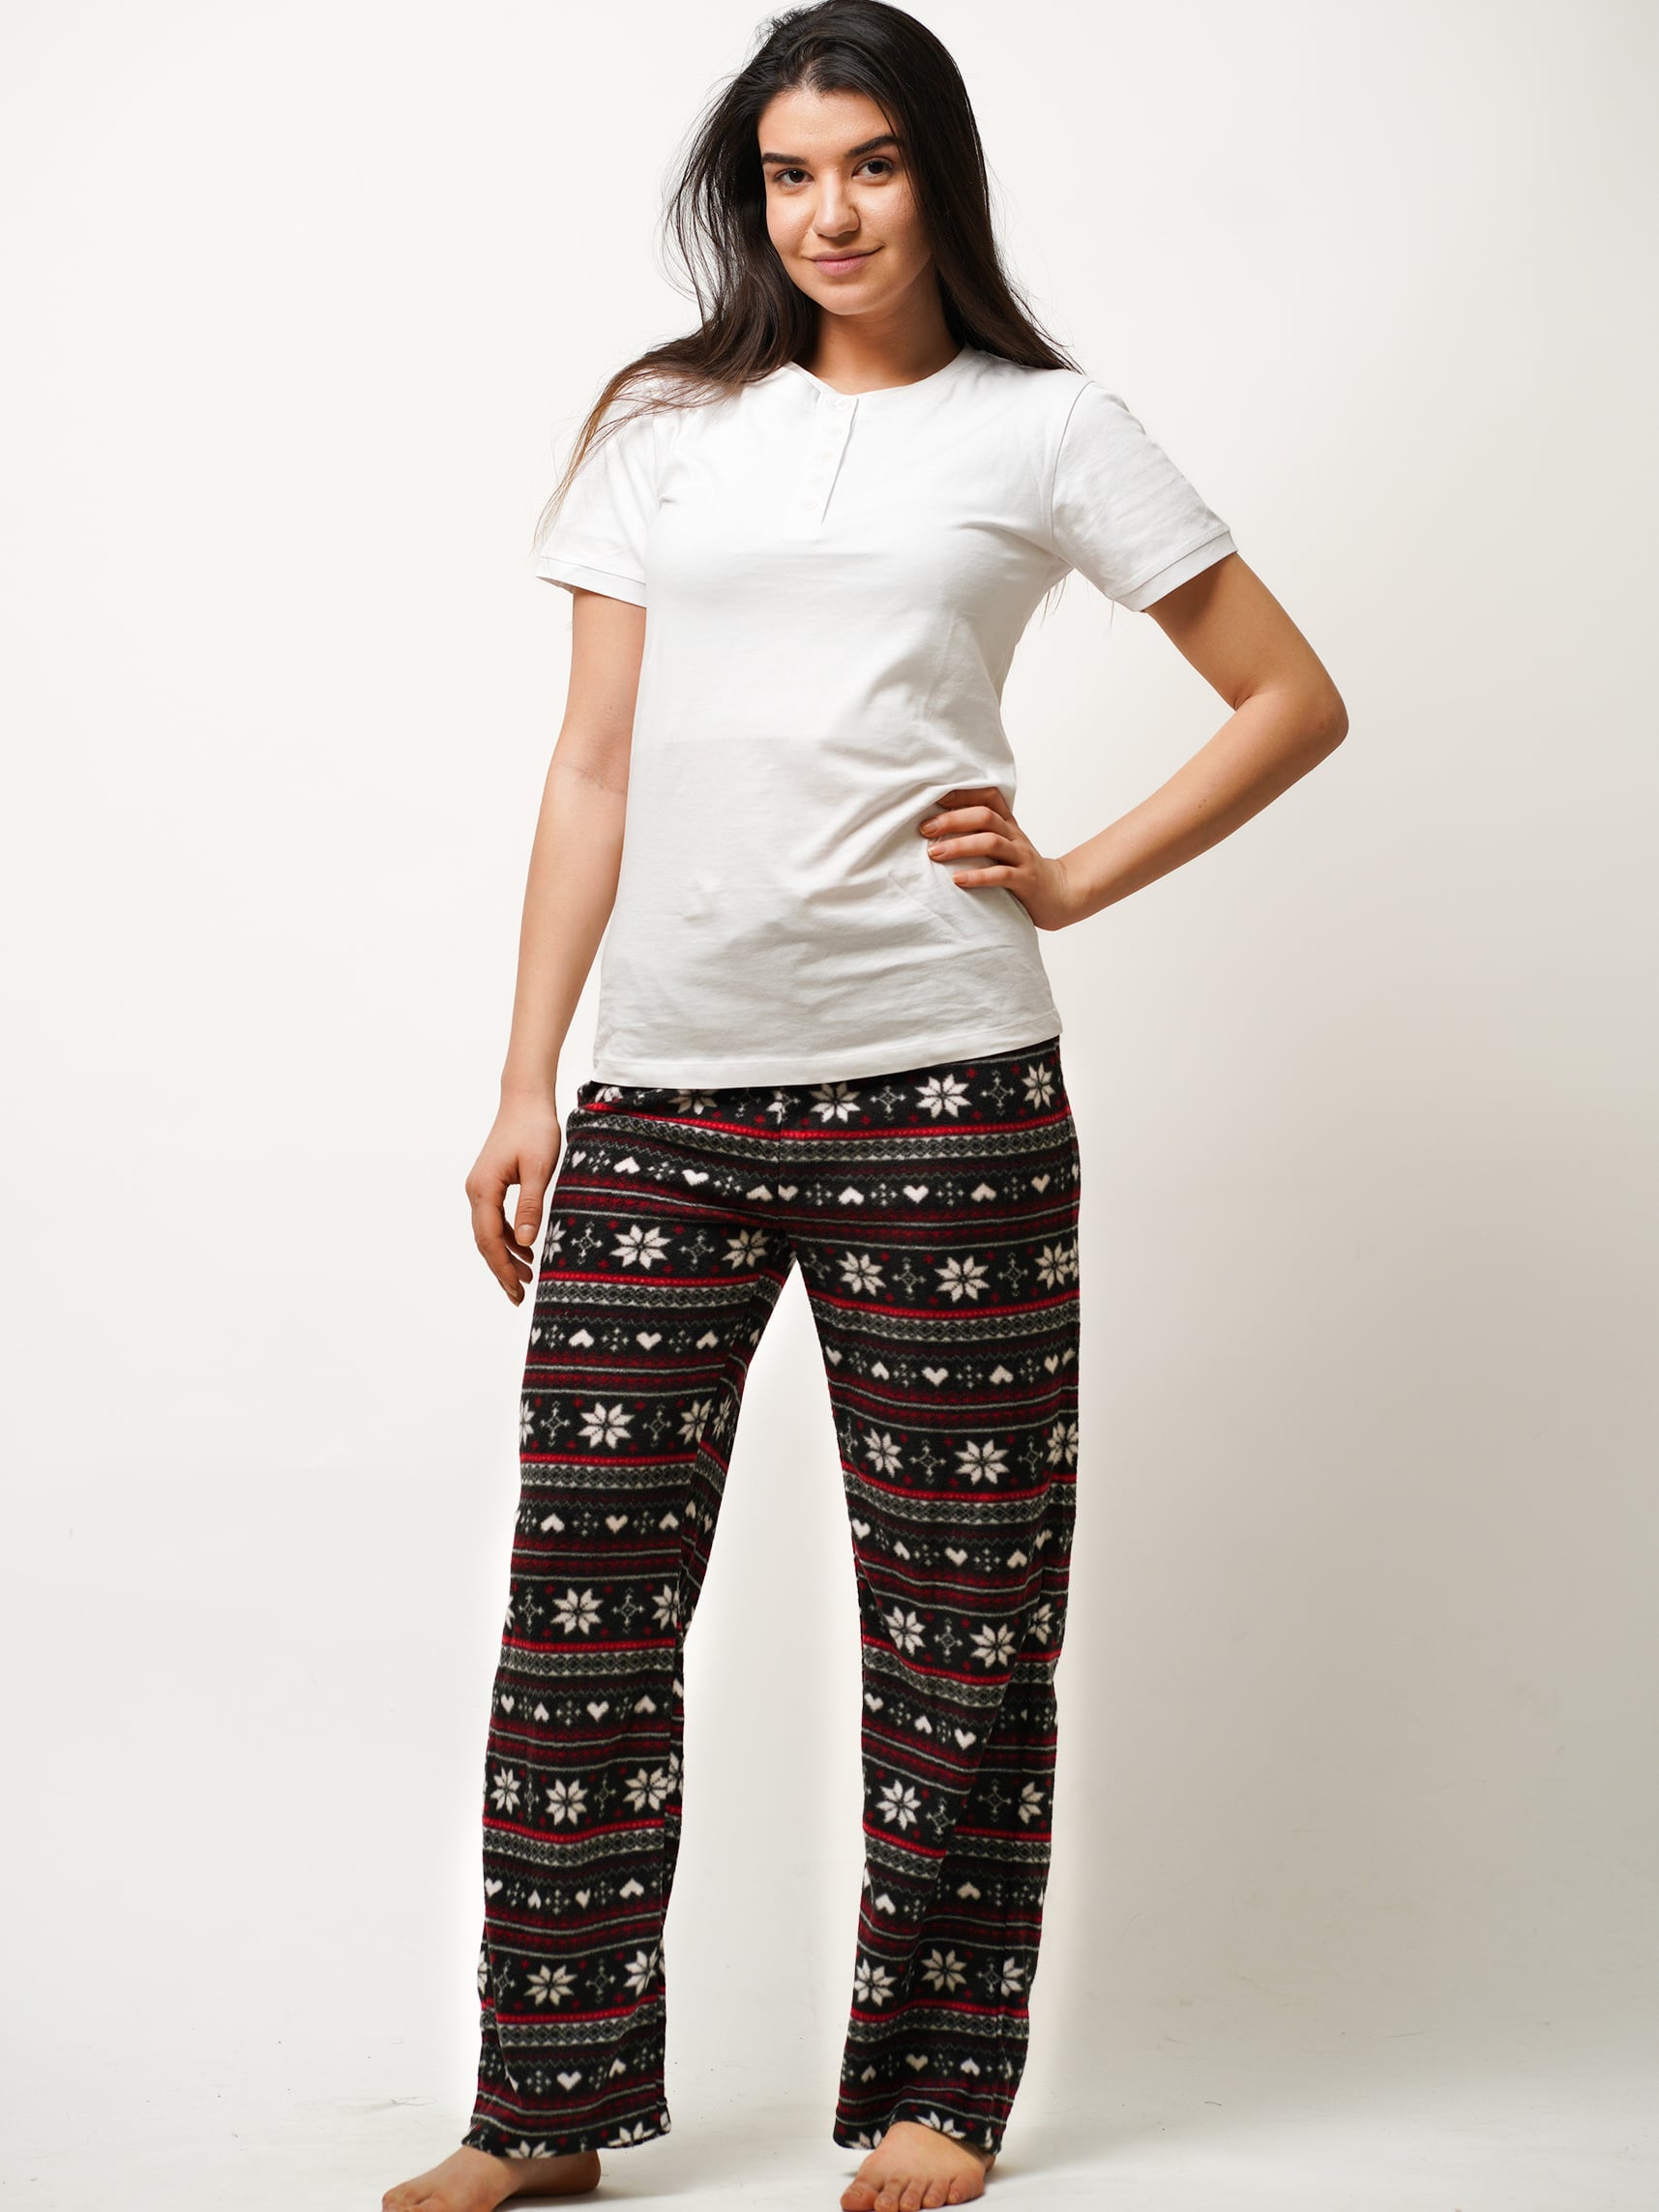 Cozy Women's Microfleece Sleepwear Pant